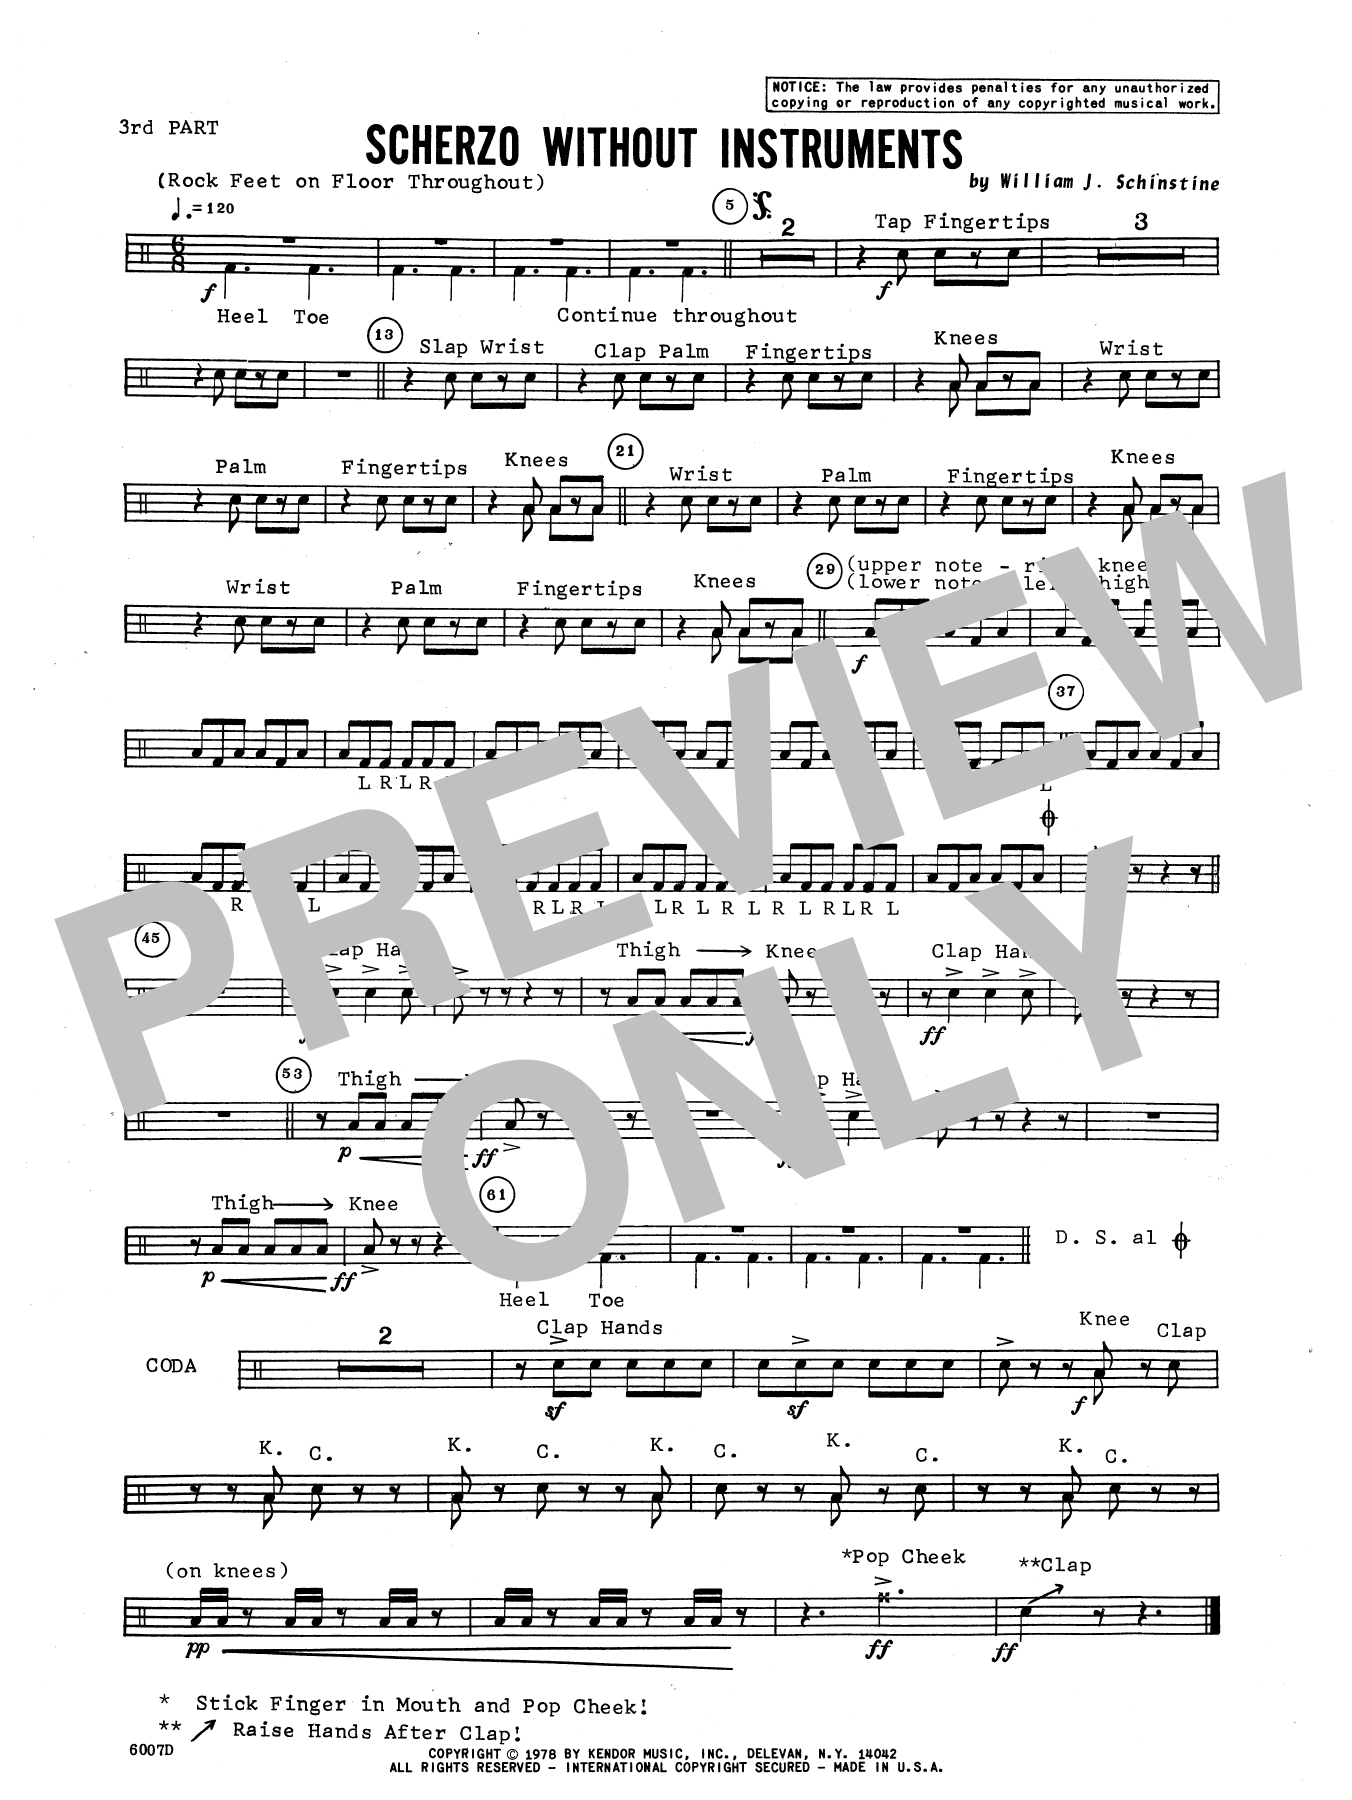 Download William Schinstine Scherzo Without Instruments - Percussio Sheet Music